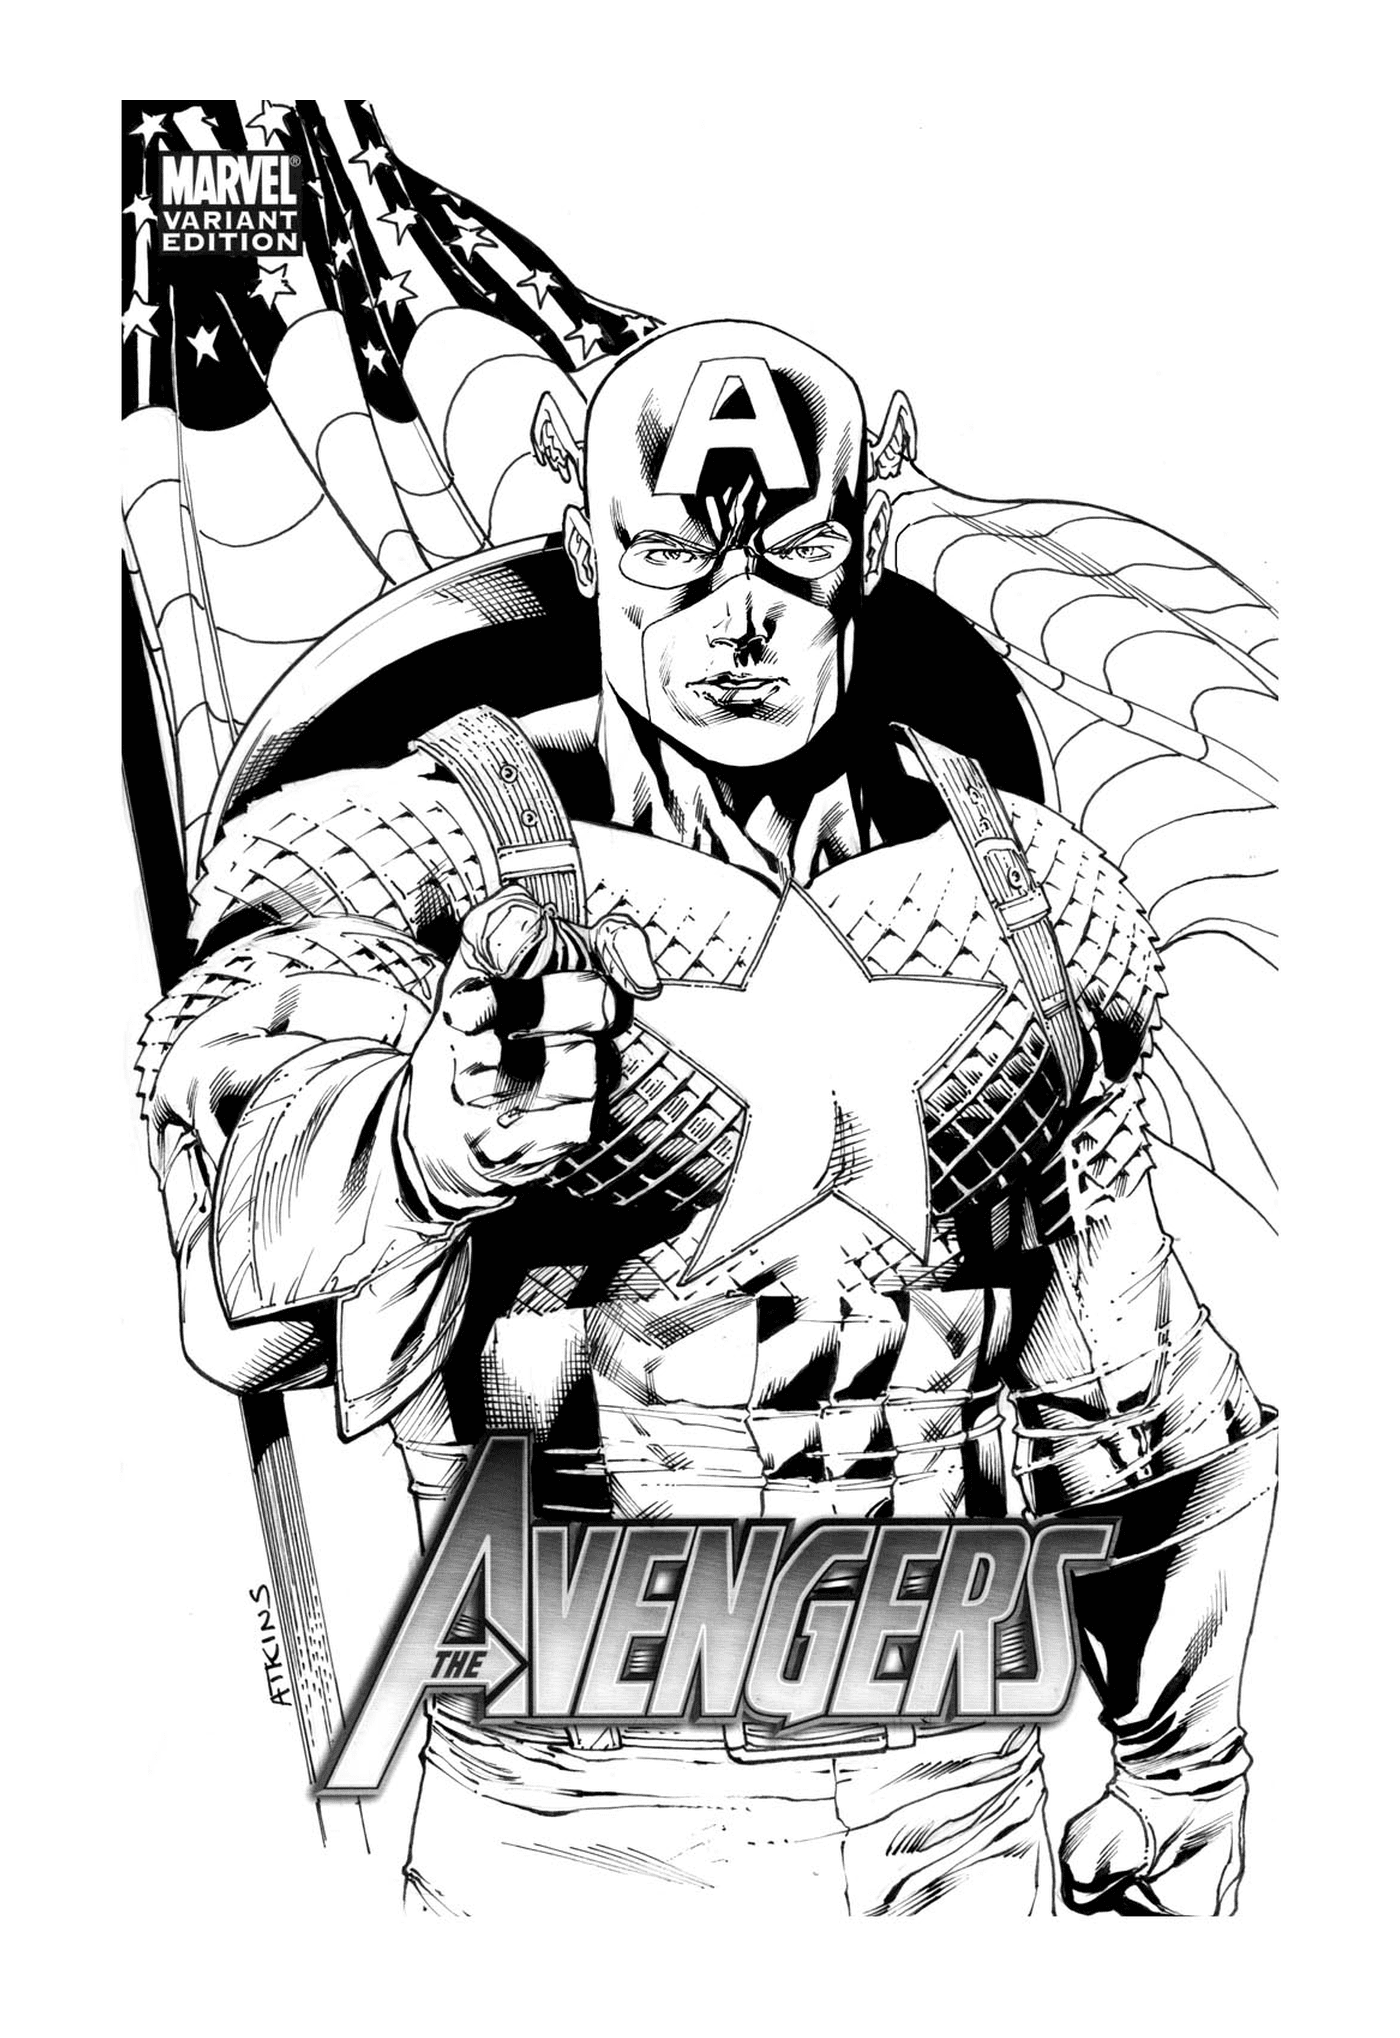   Avengers Captain America 274, homme avec une arme à feu 